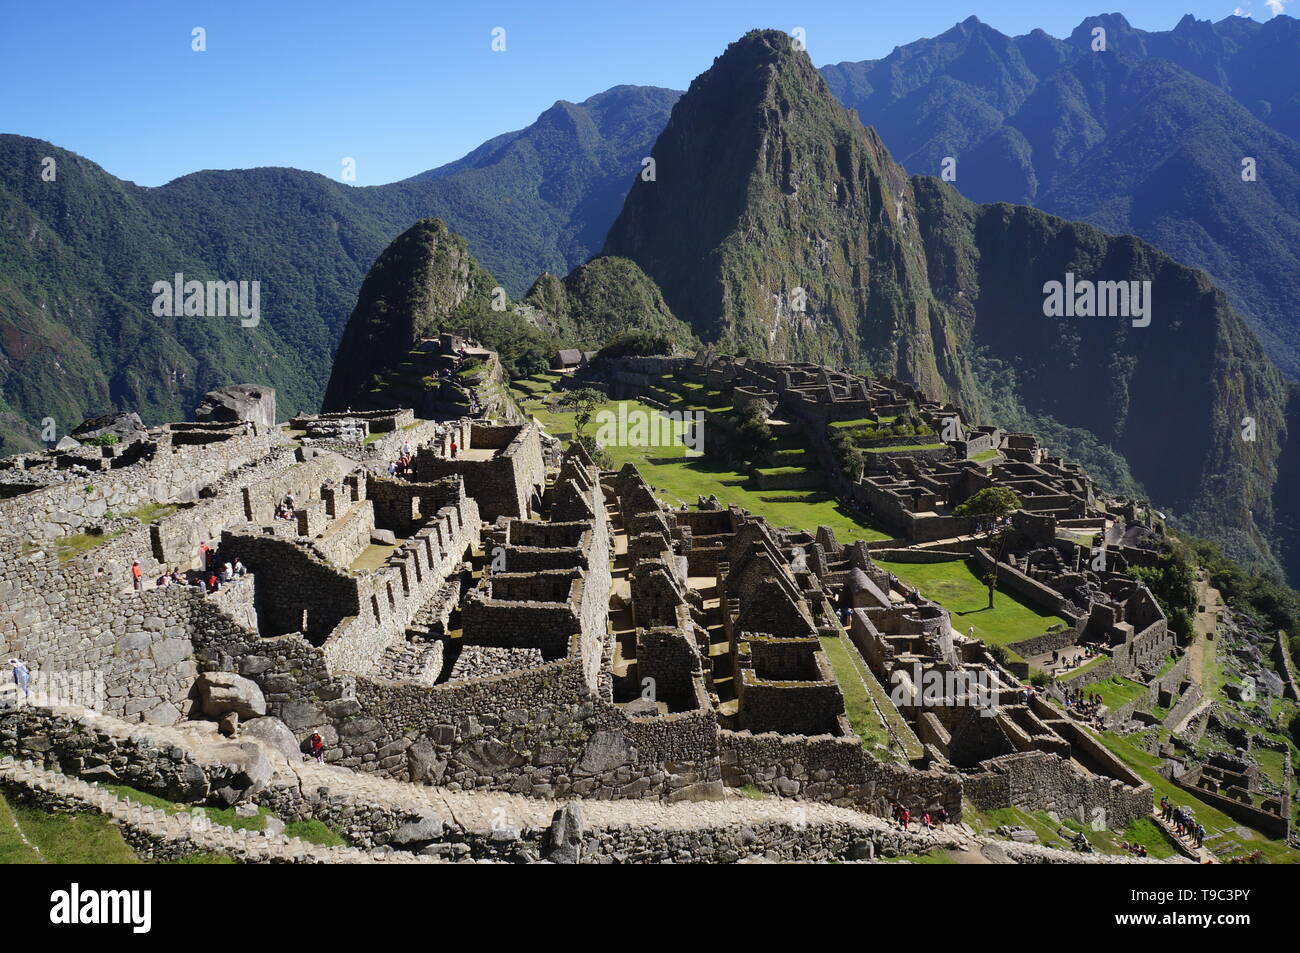 Einen spektakulären Blick über die Inka-ruinen von Machu Picchu mit Blick auf Huayna Picchu und die umliegenden Berge der Anden, Peru, Südamerika. Stockfoto